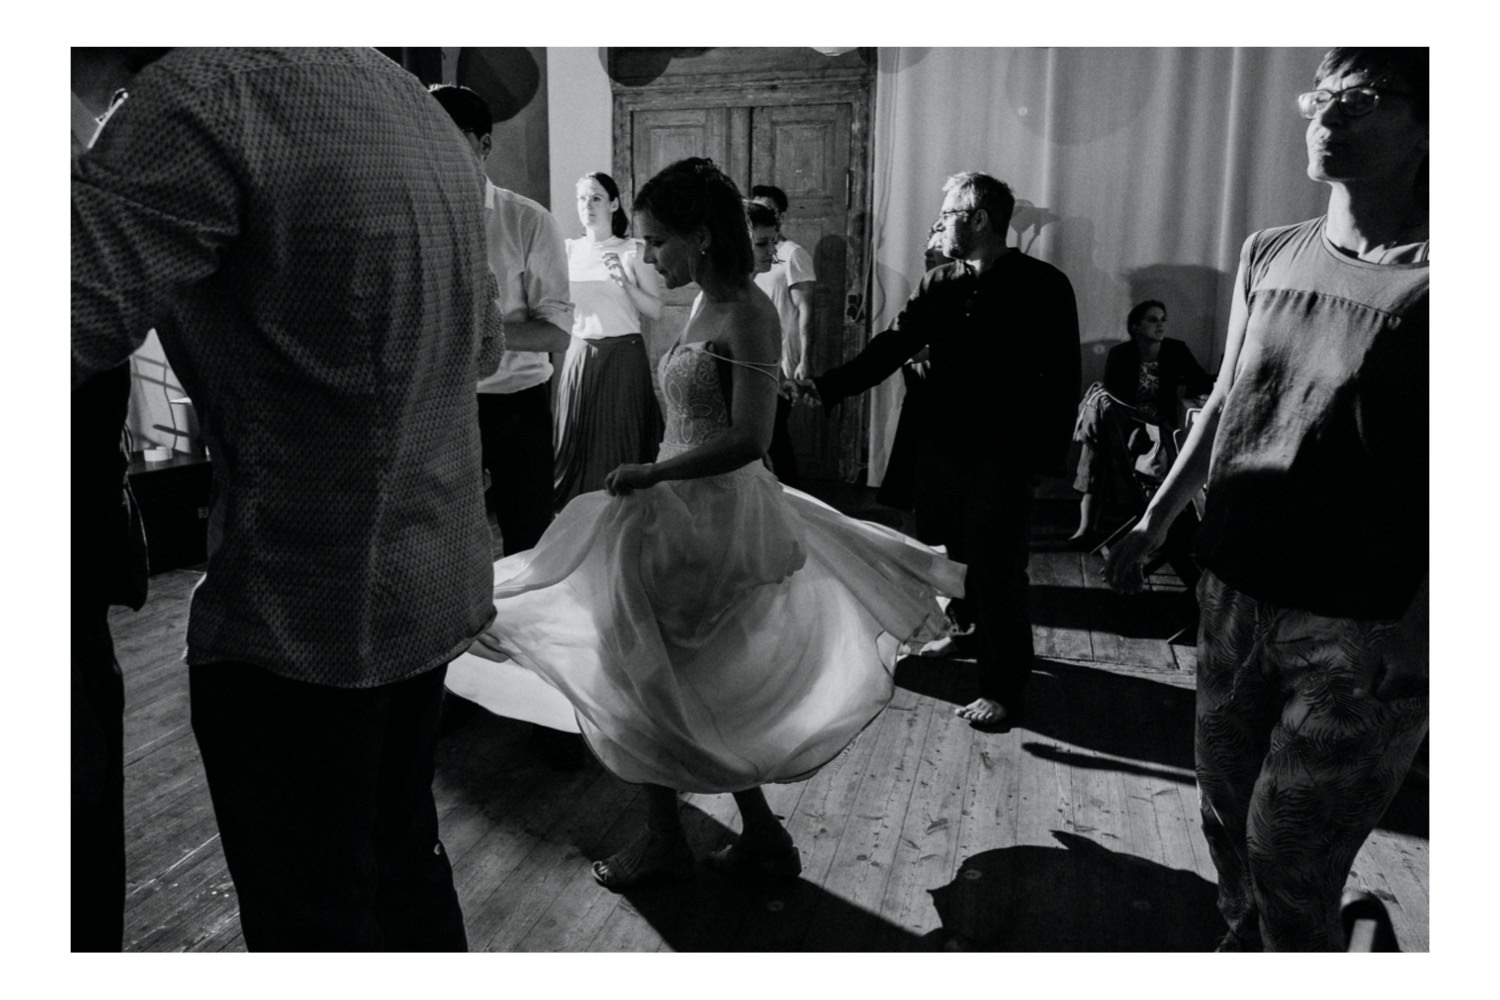 Die Braut tanzt zur mitreißenden Musik der Band so ausgelassen, dass ihr Kleid beginnt zu fliegen, während sie sich im Rhythmus der Musik dreht. Ihr strahlendes Lächeln und die Freude in ihren Augen spiegeln die Atmosphäre der Feier wider, während sie die Tanzfläche mit Energie und Leidenschaft erfüllt. Die Gäste jubeln ihr zu und genießen den Moment, während das Brautpaar und ihre Liebsten gemeinsam diesen besonderen Tag feiern.